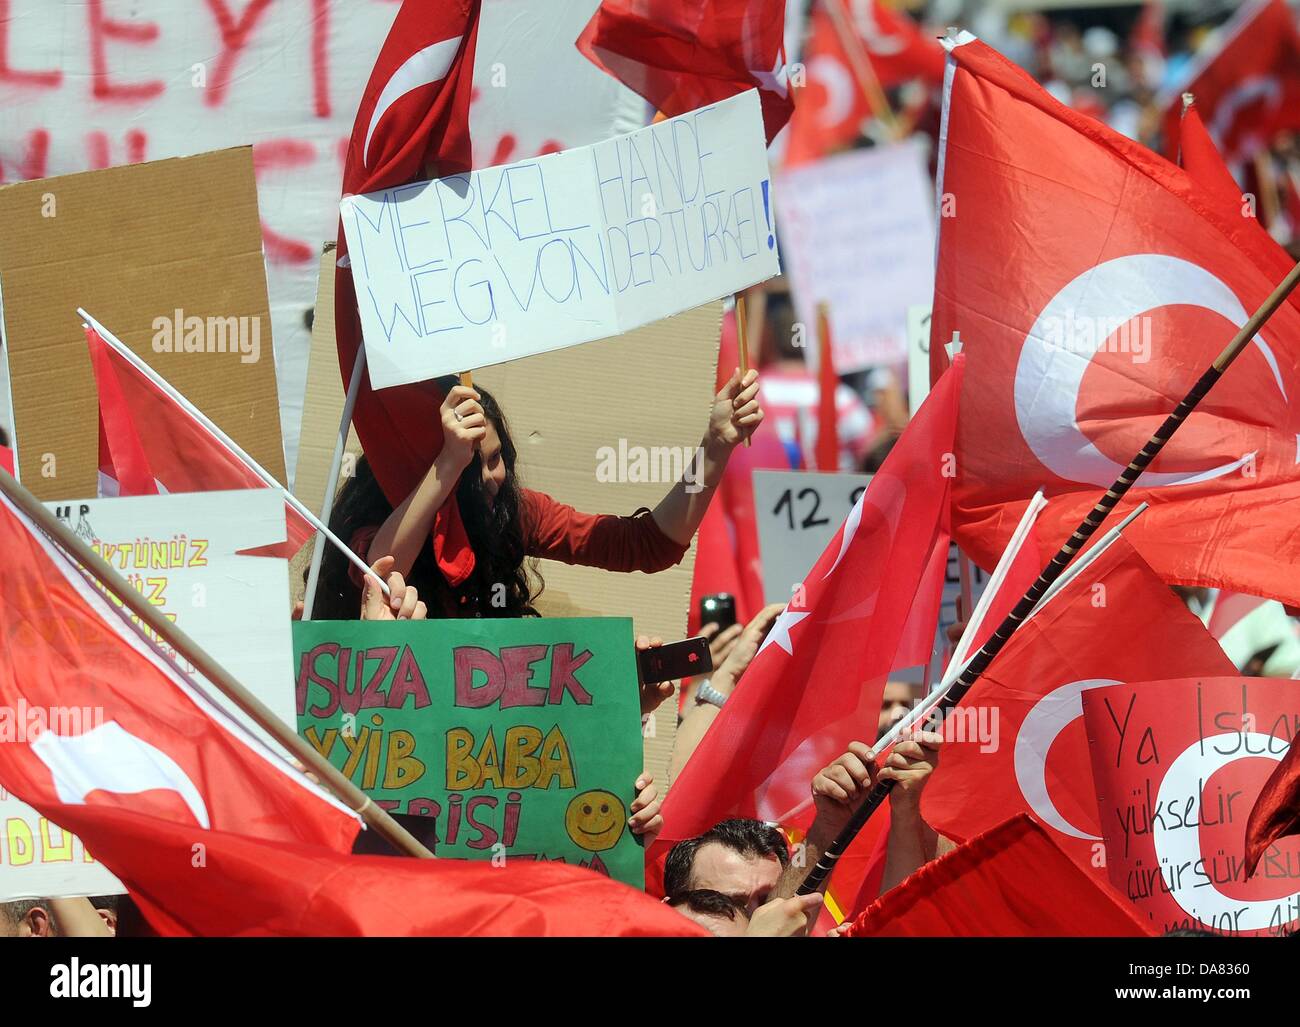 En Dusseldorf, Alemania. 07 de julio, 2013. Los manifestantes llevan banderas y carteles durante una manifestación para mostrar su apoyo a primer ministro turco Erdogan en Duesseldorf, Alemania, 07 de julio de 2013. La manifestación bajo el lema 'democracia - Eventos actuales en Turquía" fue organizado por la Unión de Demócratas European-Turkish. Foto: HENNING KAISER/dpa/Alamy Live News Foto de stock